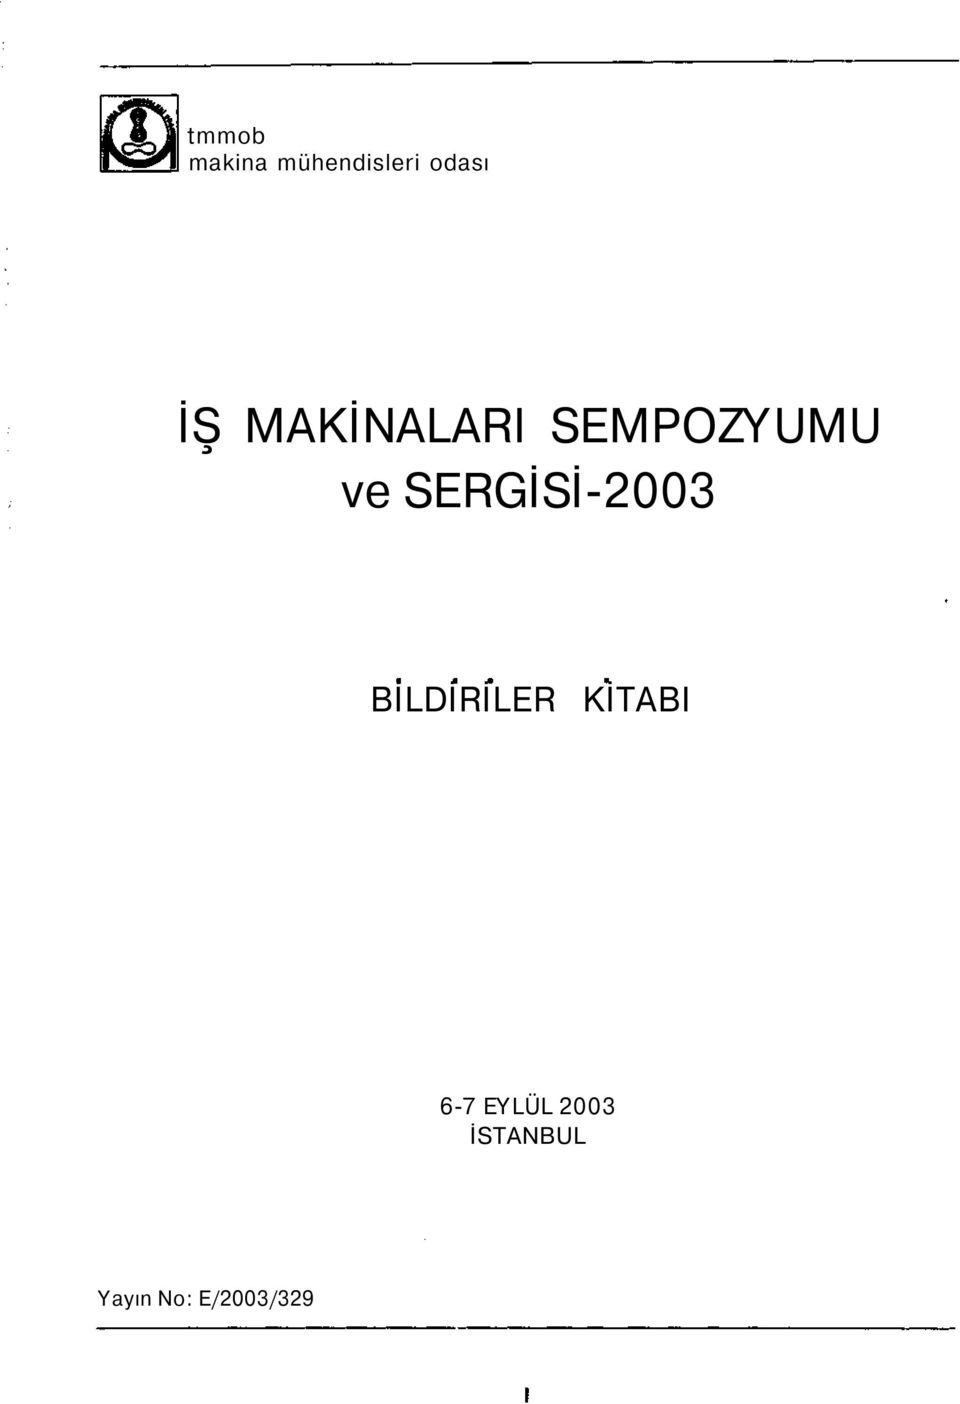 SERGİSİ-2003 BİLDİRİLER KİTABI